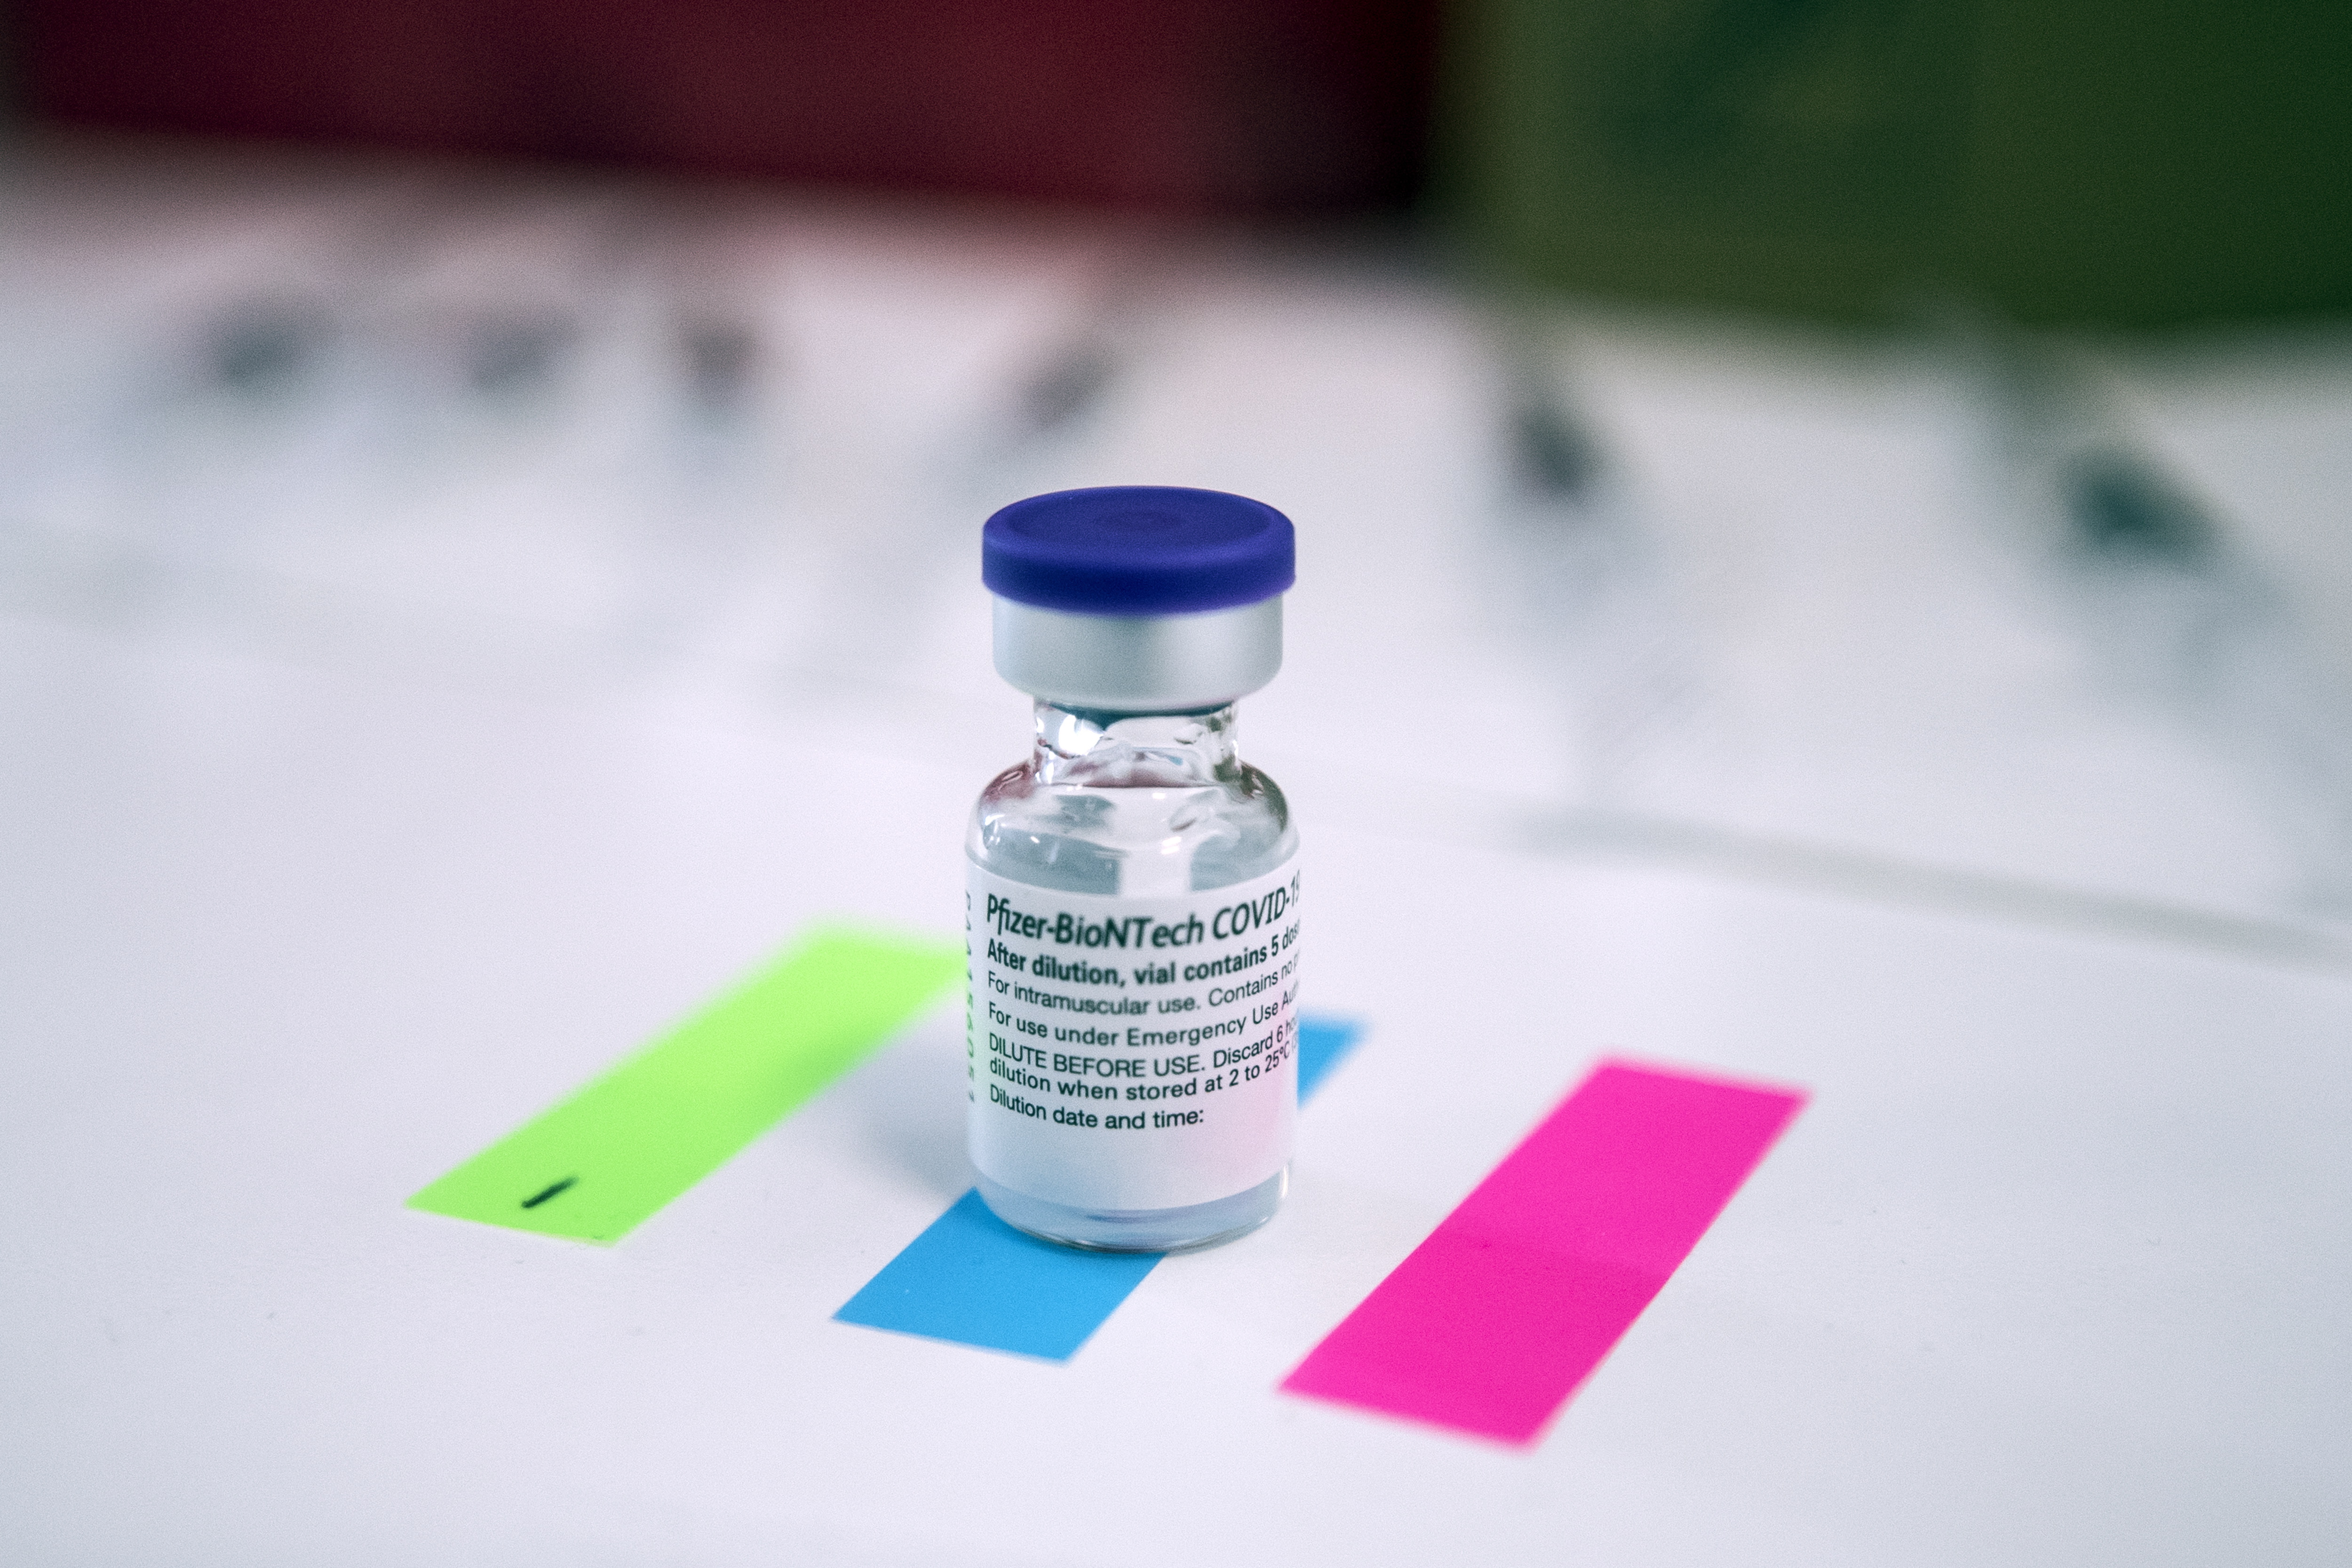 Variante sudafricana puede atravesar vacuna de Pfizer, según nuevo estudio